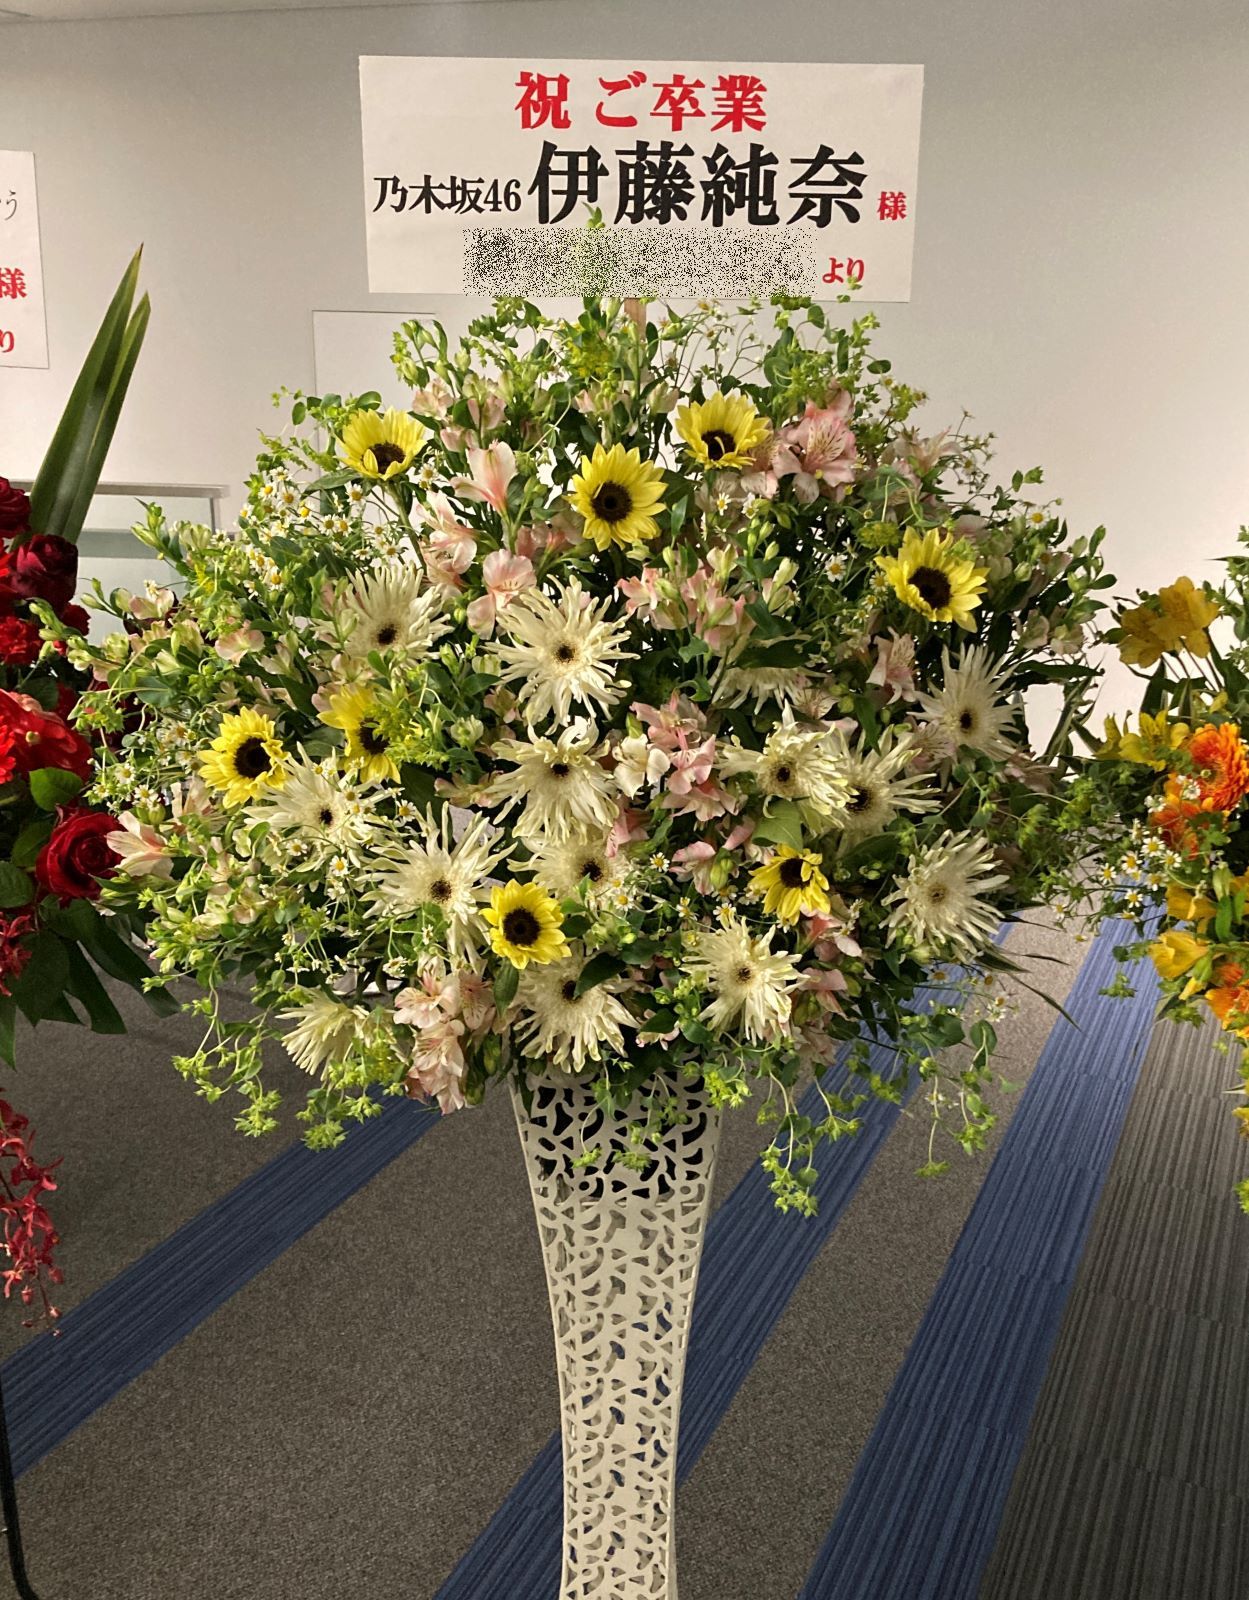 横浜アリーナへスタンド花(スタフラ)を配達しました。【横浜花屋の花束・スタンド花・胡蝶蘭・バルーン・アレンジメント配達事例905】